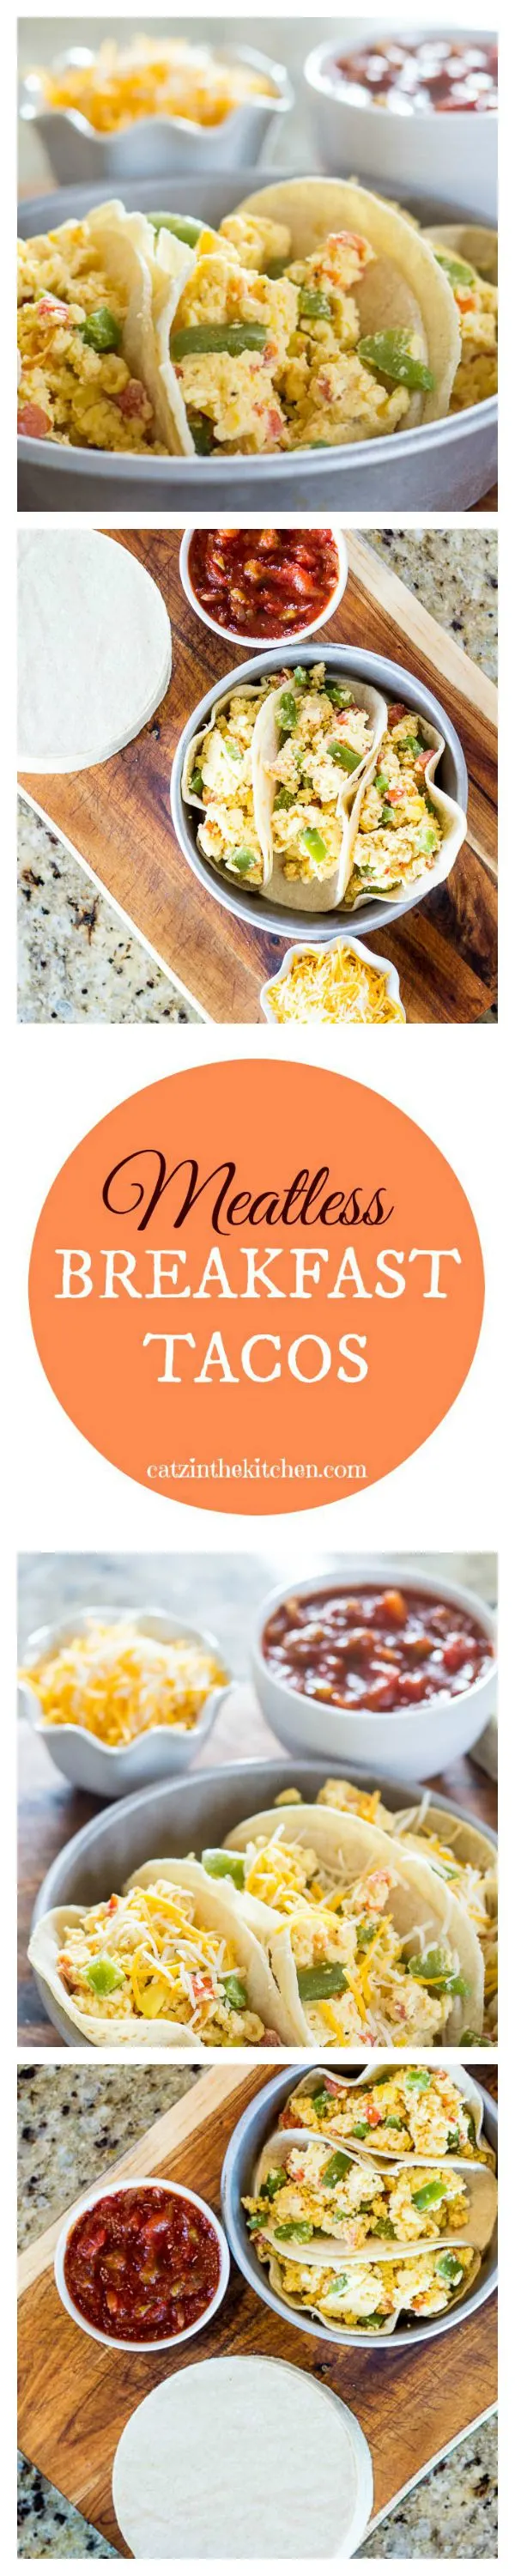 Meatless Breakfast Tacos | Catz in the Kitchen | catzinthekitchen.com | #breakfast